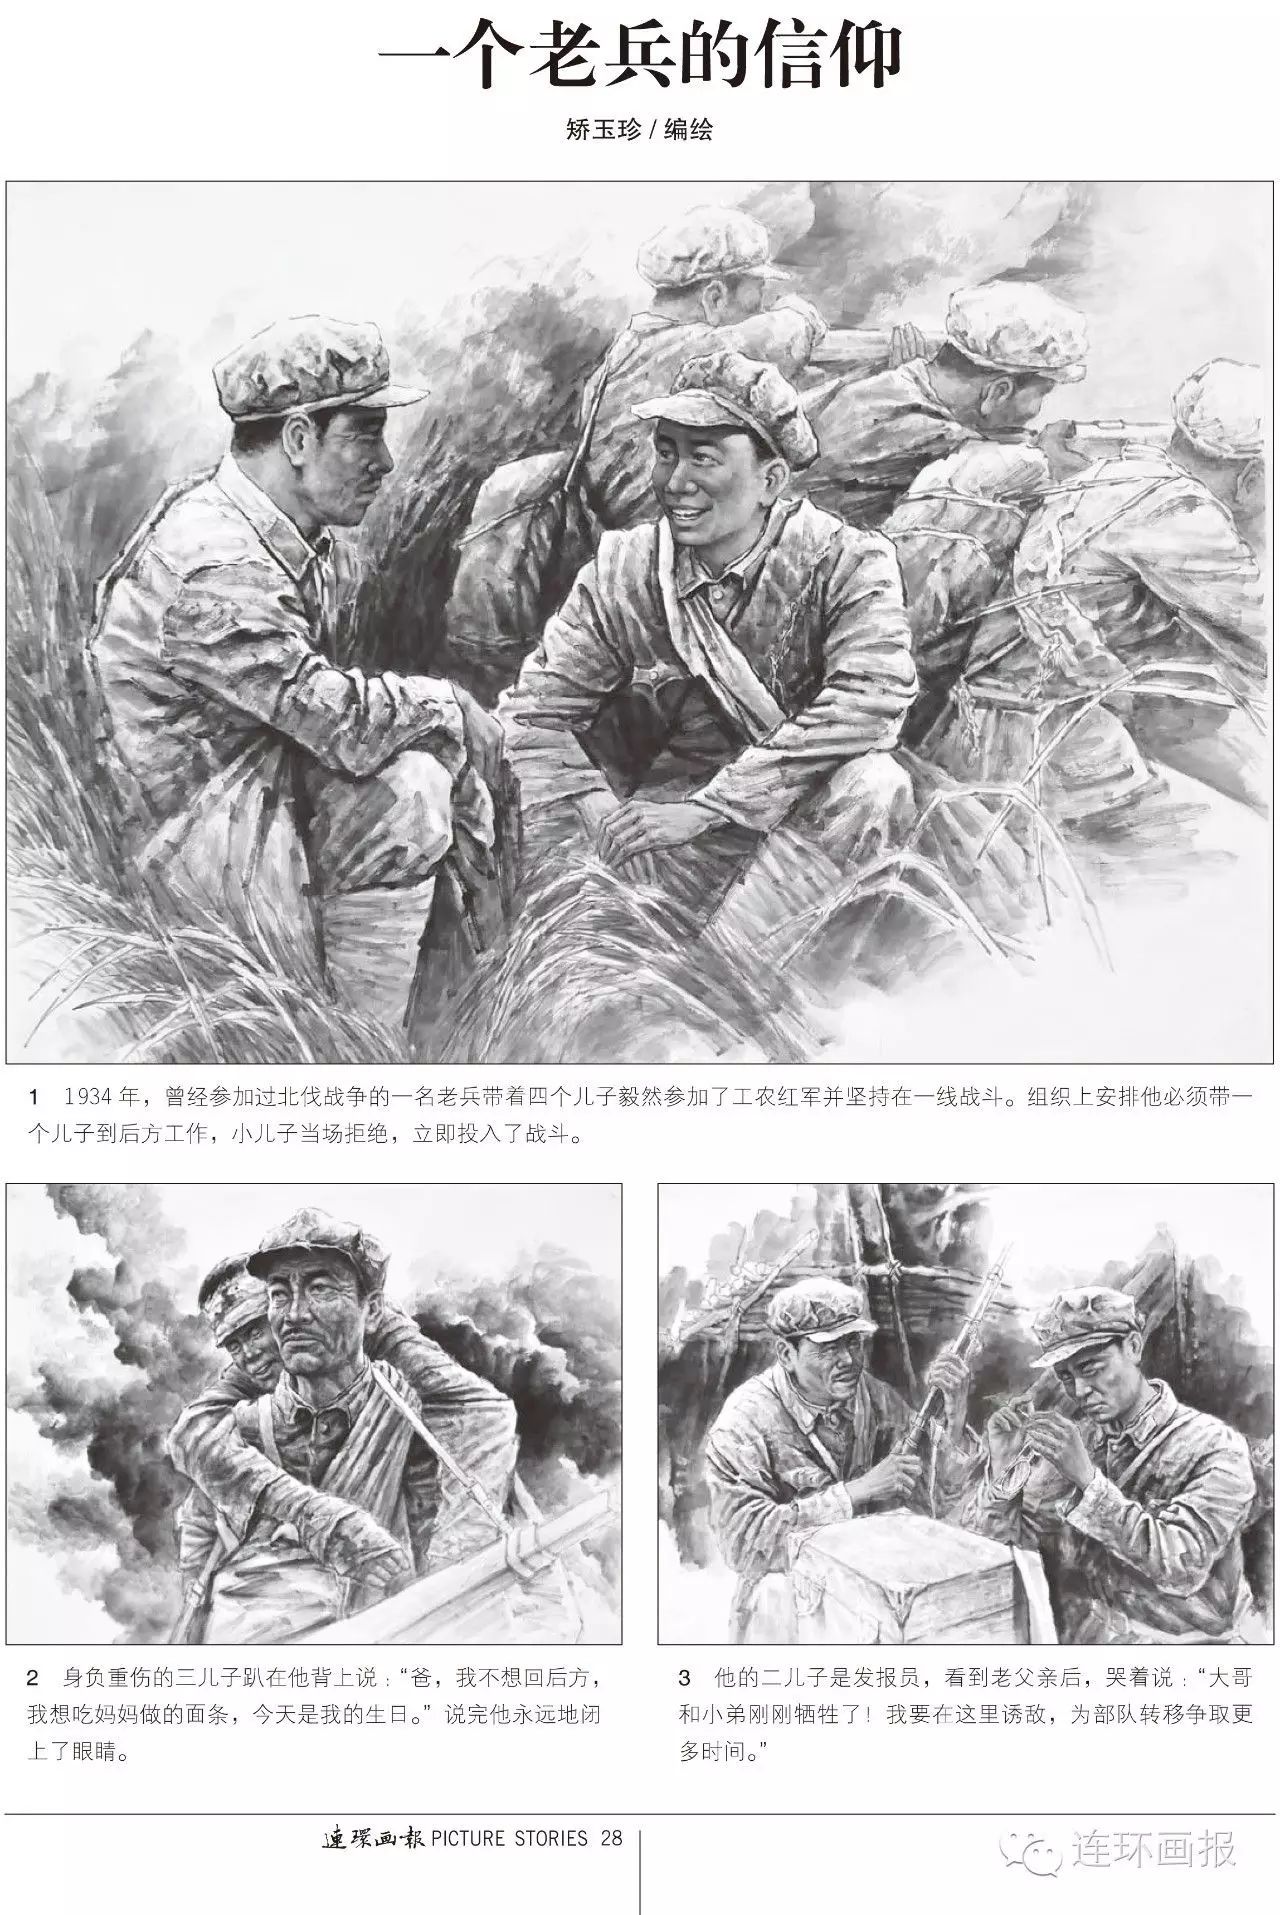 纪念长征胜利80周年特别报道|《连环画报》纪念中国工农红军长征胜利